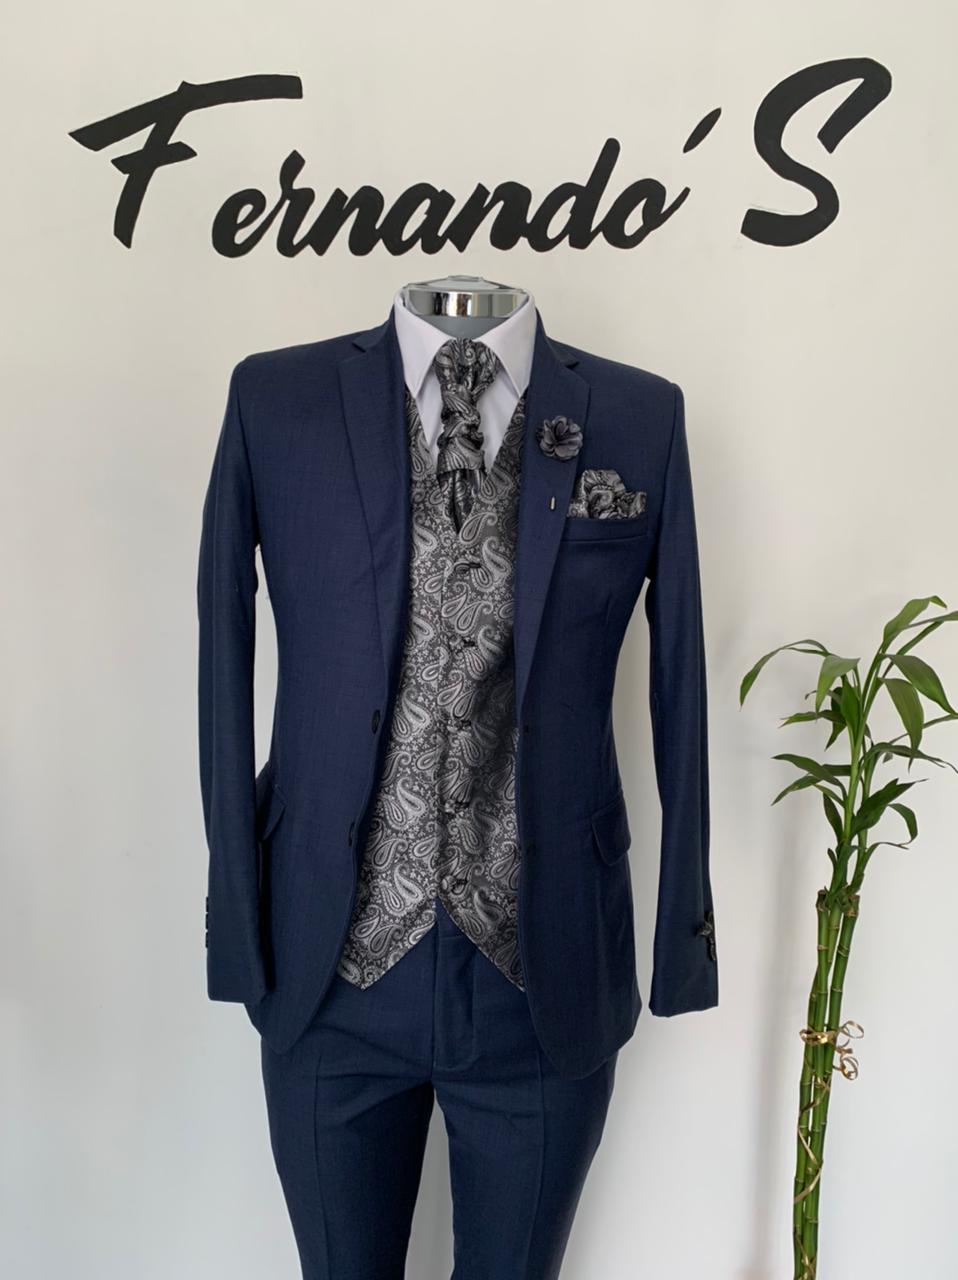 Fernando’s Renta de Trajes